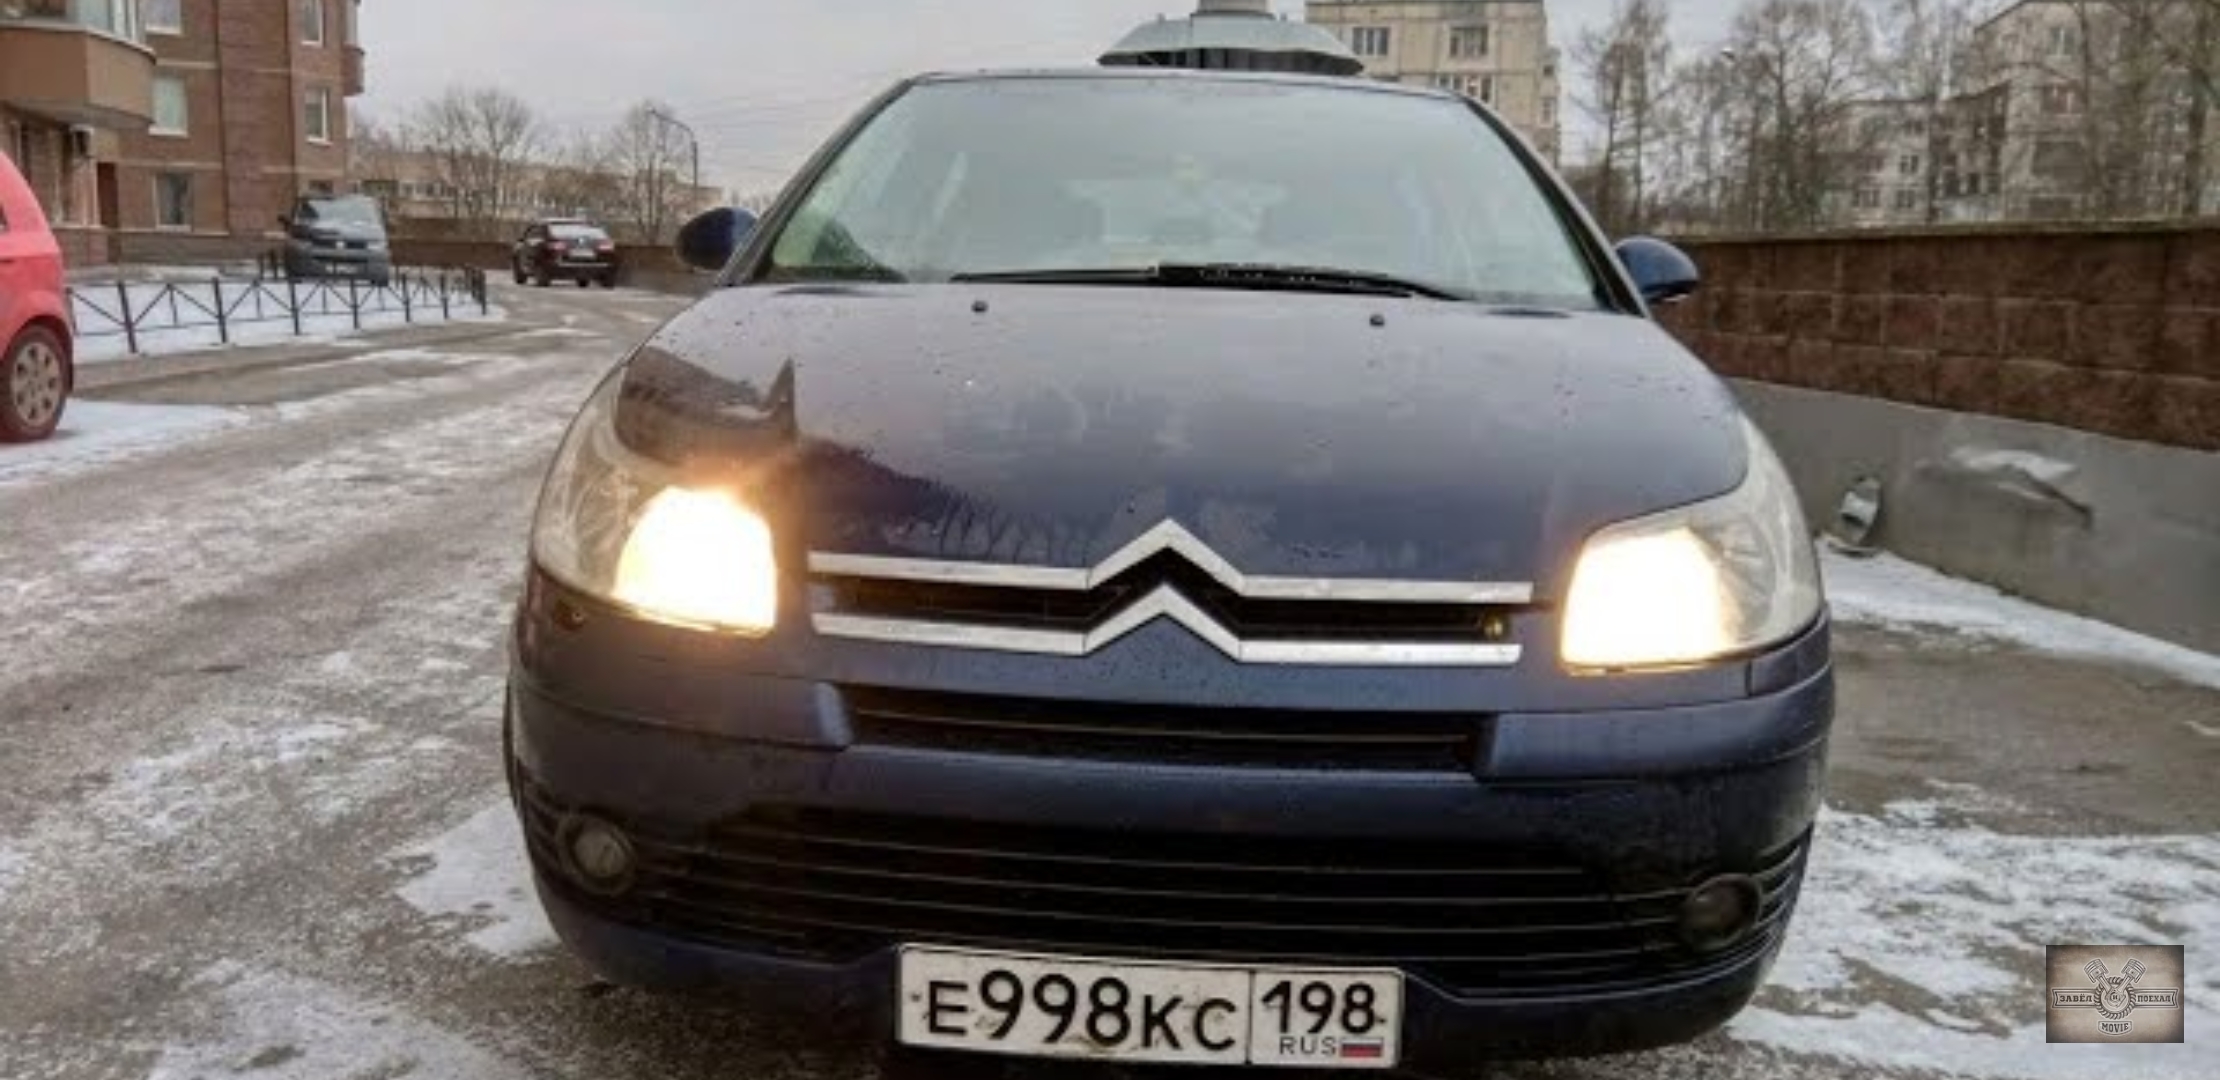 Анонс видео-теста Citroën С4. (ситроен с4) символ свободолюбивой Франции